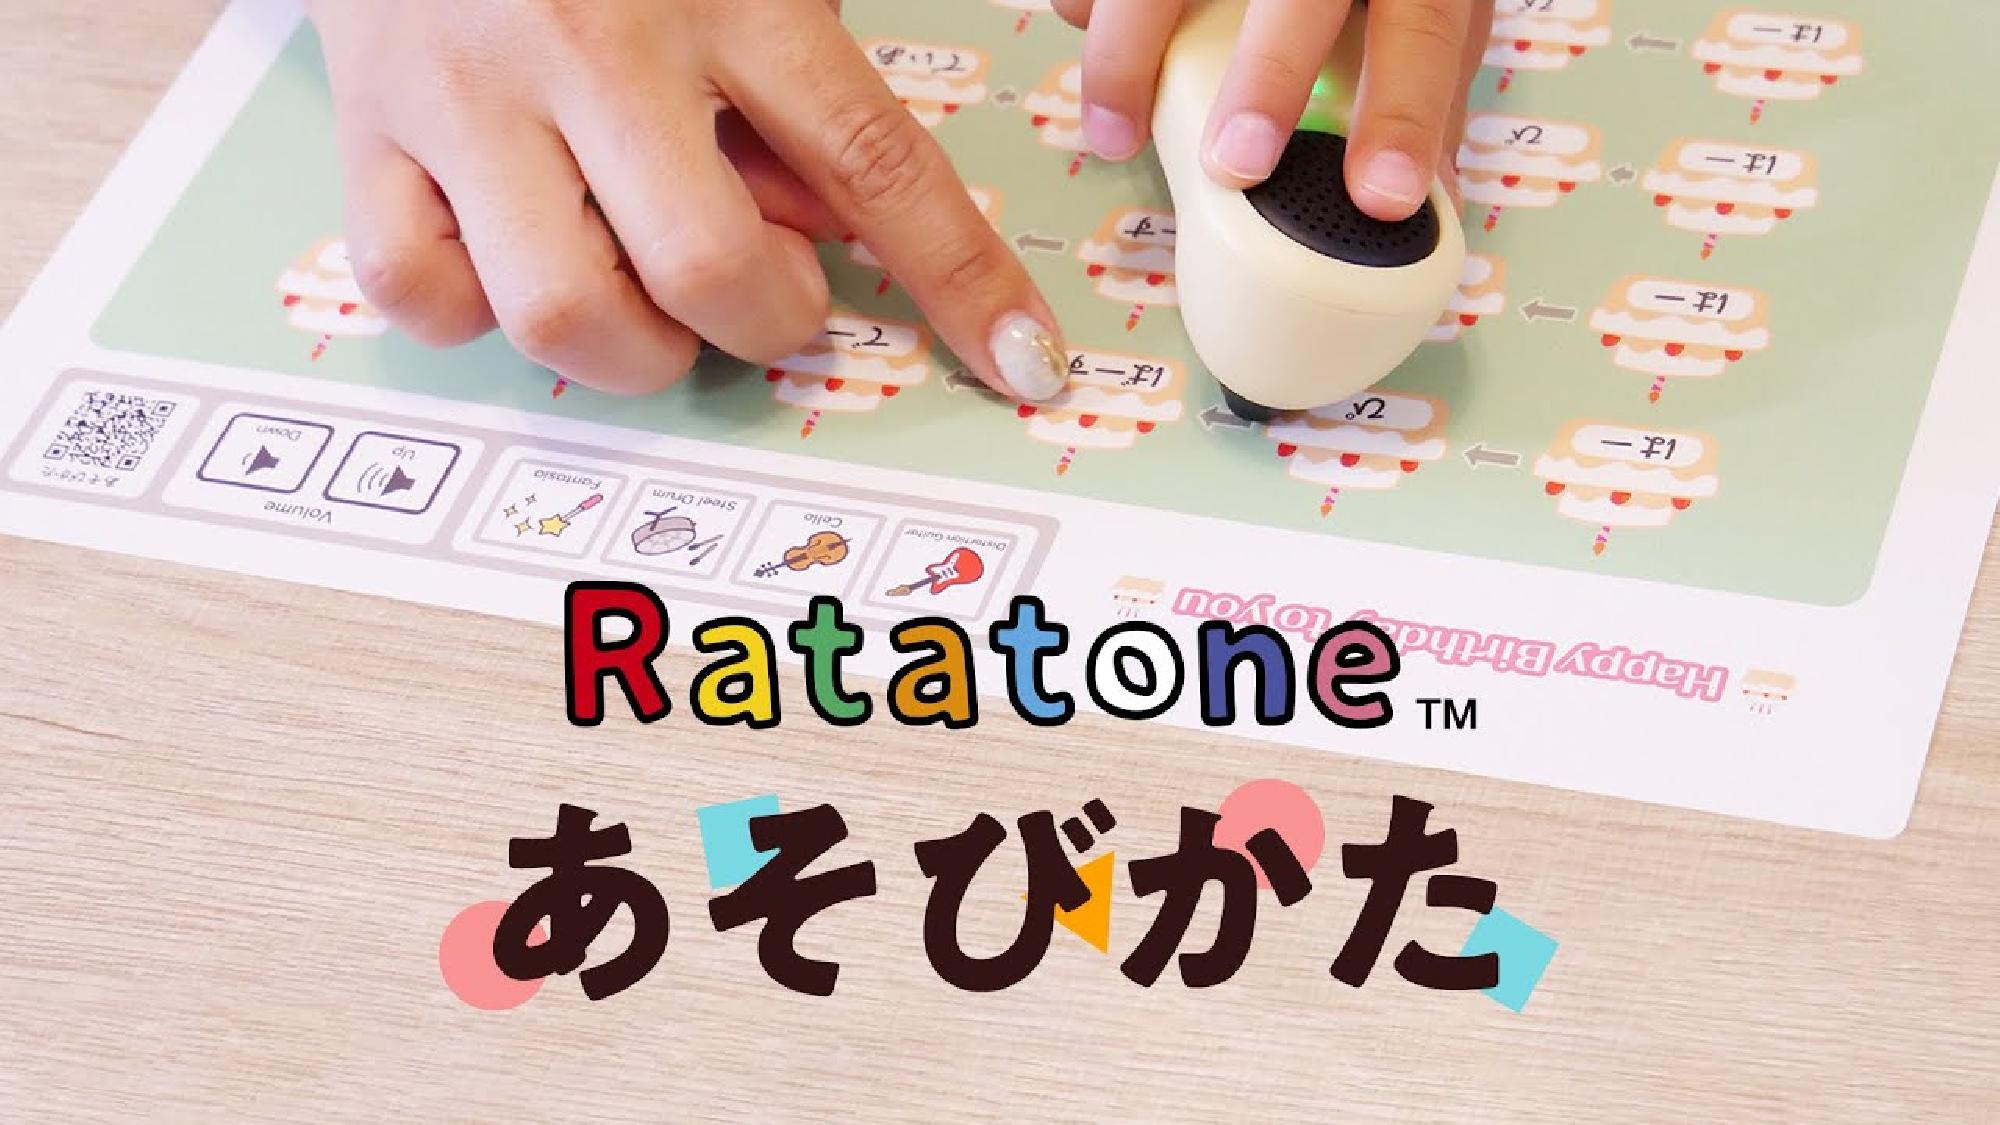 Ratatone紹介動画「あそびかた」_画像